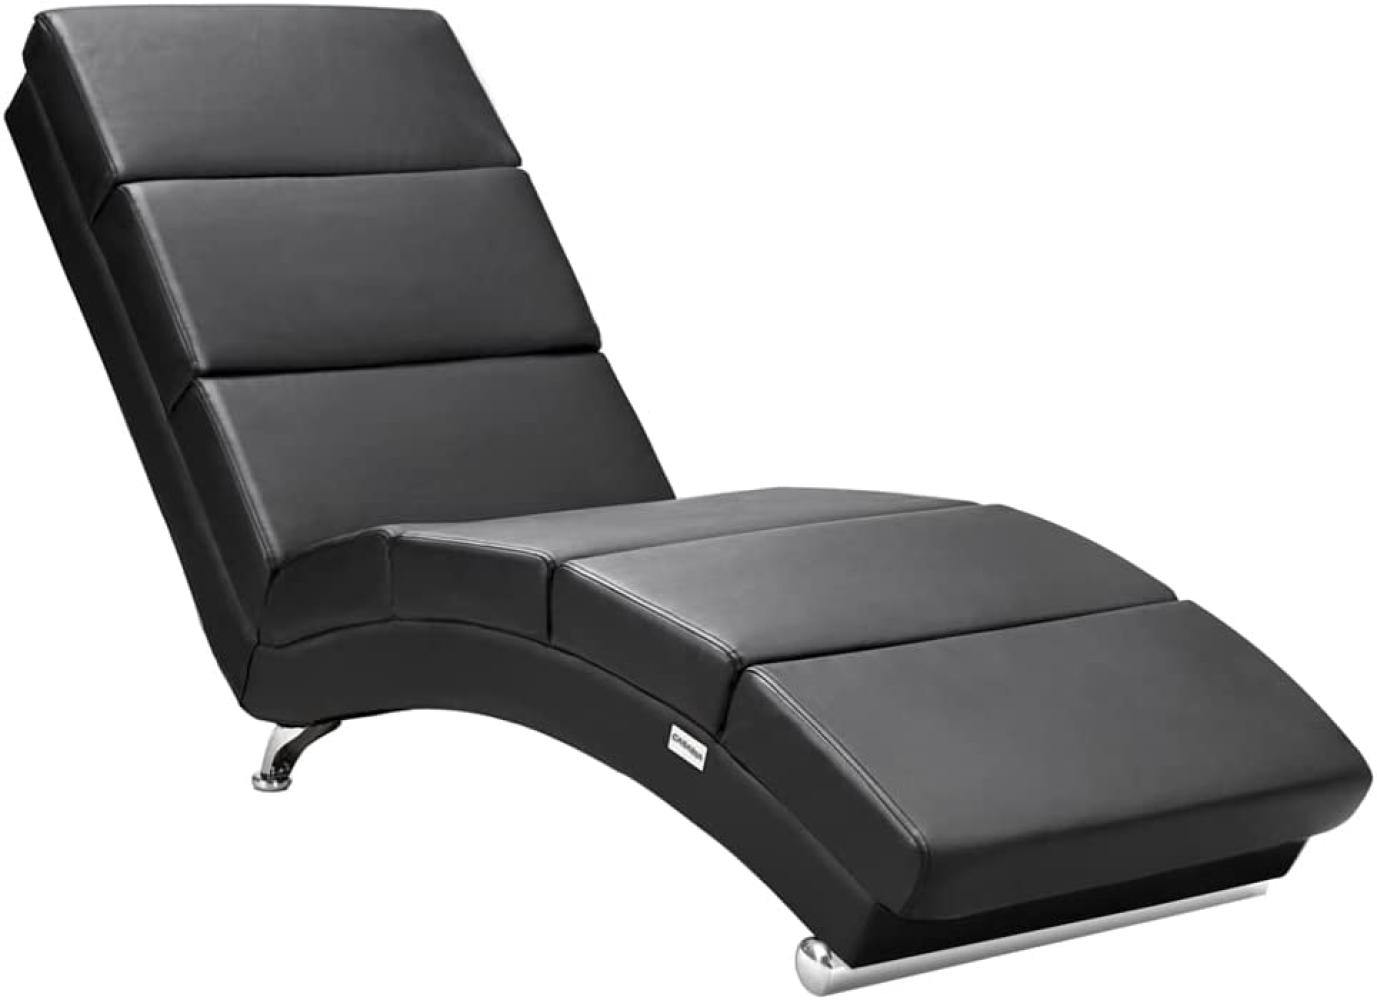 Casaria 'London' Relaxliege XXL mit hoher Rückenlehne und ergonomisch, Kunstleder schwarz, 186 x 55 x 89 cm Bild 1